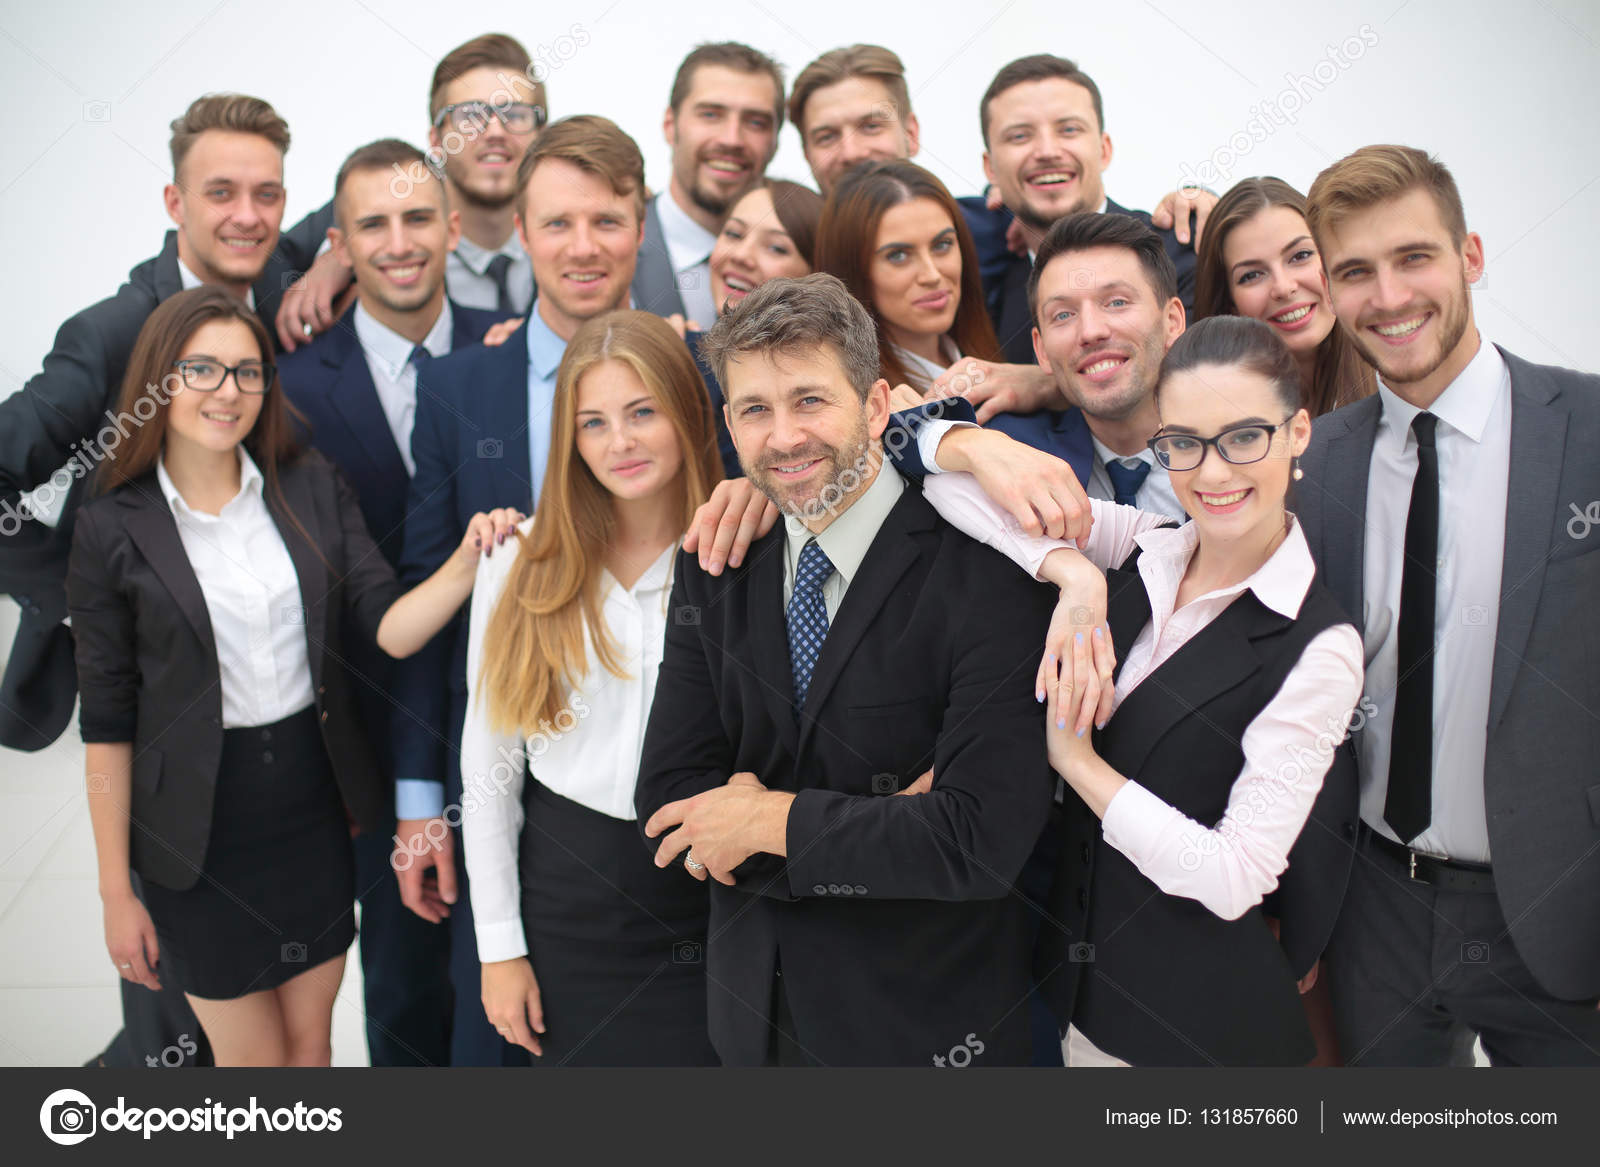 Потенциальная команда. Портрет успешной команды предпринимателя. Команда бизнесменов фото без лиц.